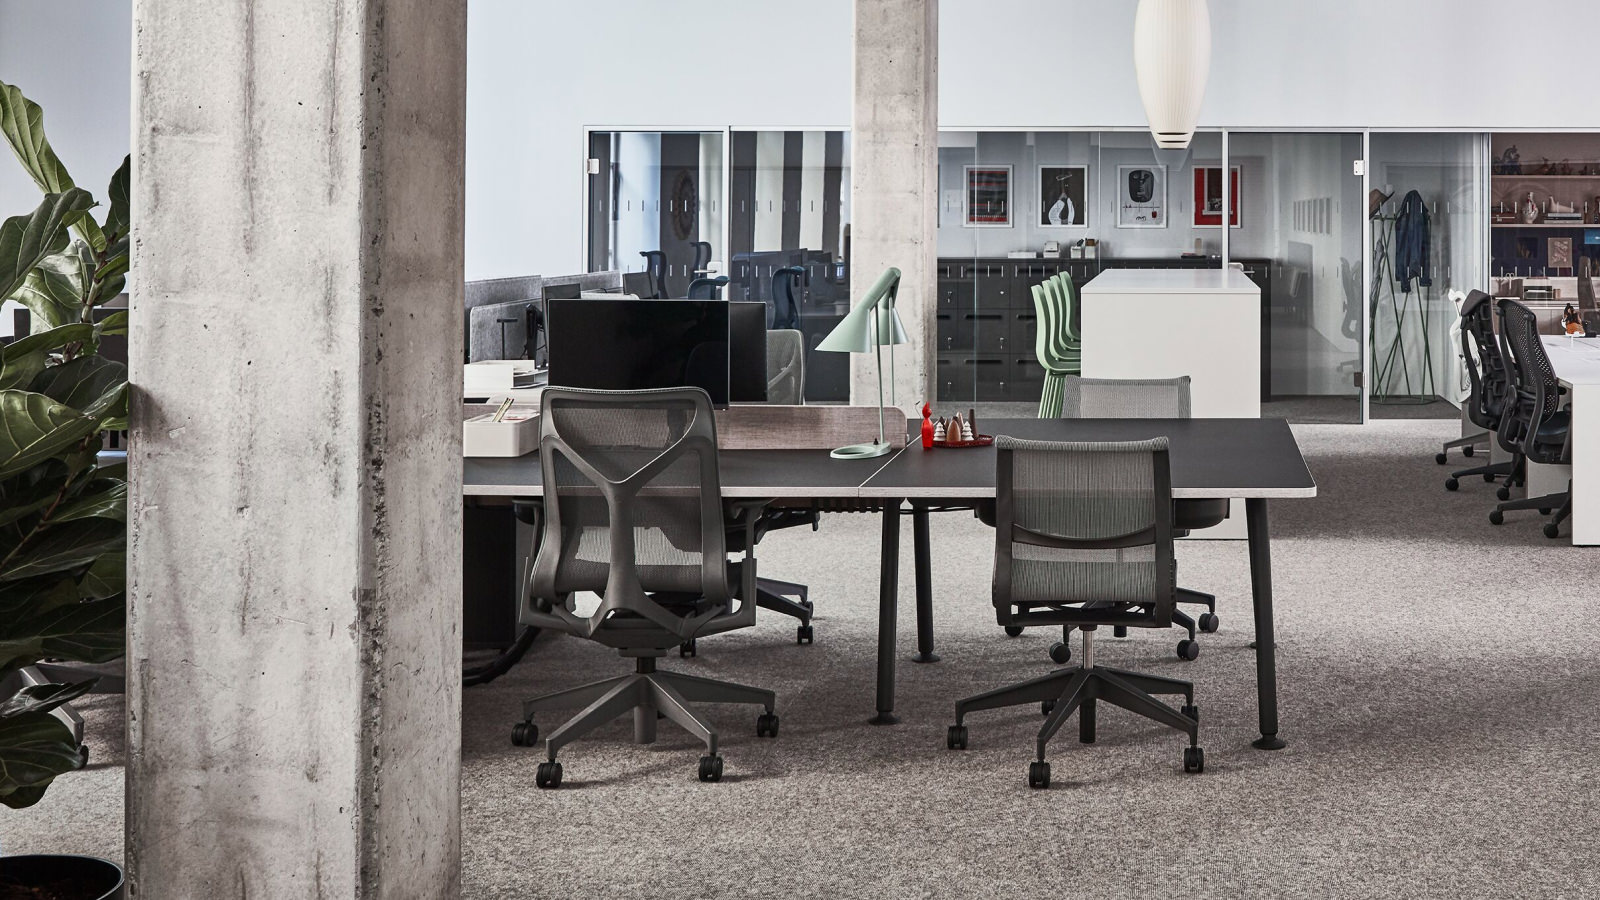 巴黎展厅内的工作区，黑色 Memo 办公桌周围摆放着 Setu 和 Cosm 椅子。